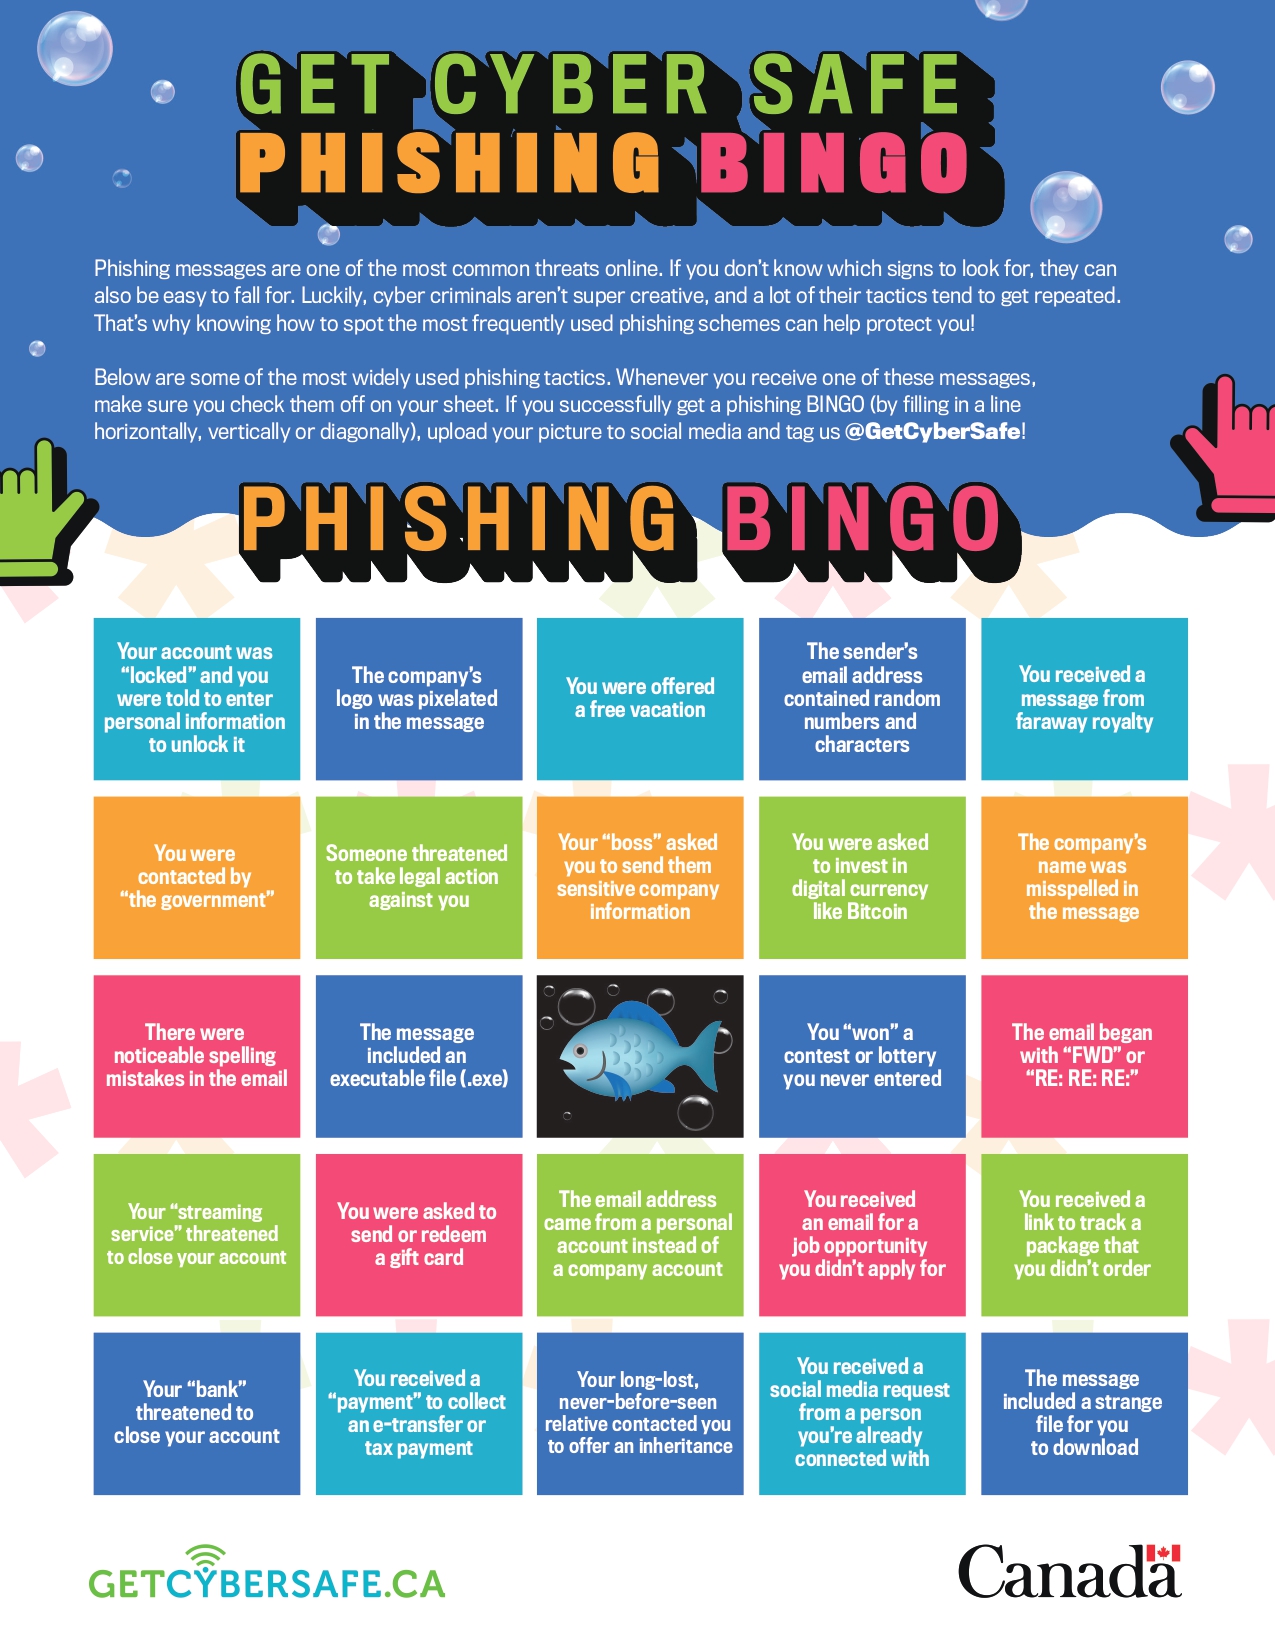 Phishing Bingo